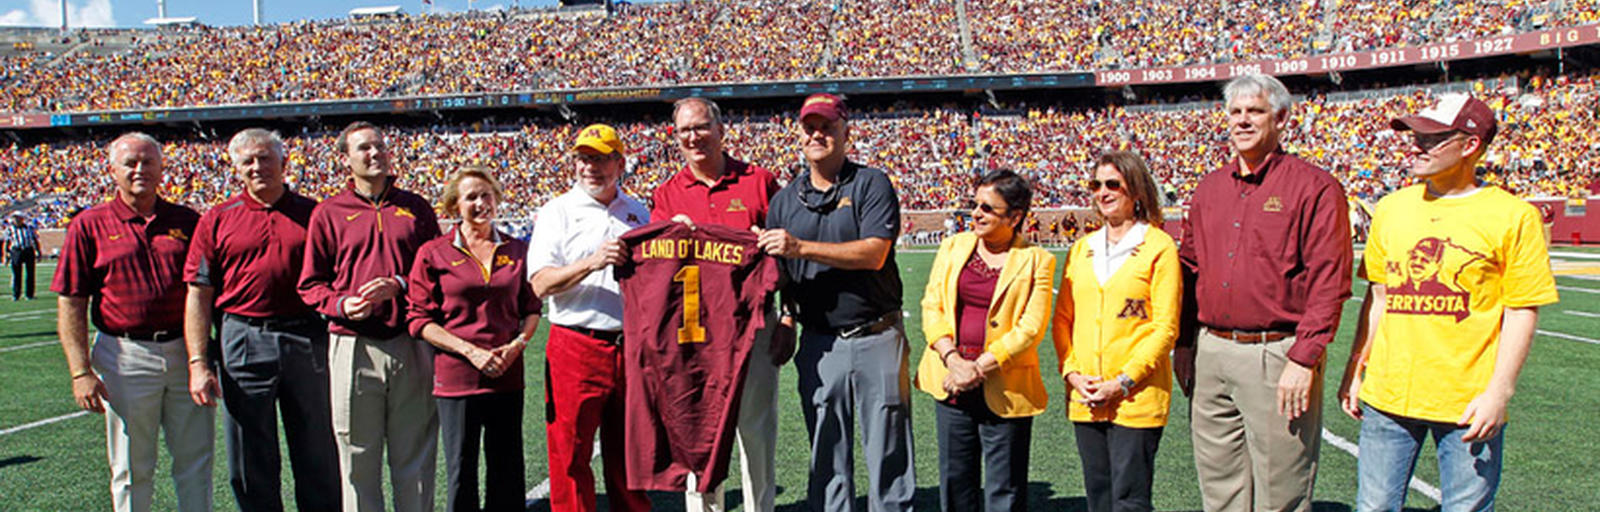 Land O' Lakes Honored at Football Game